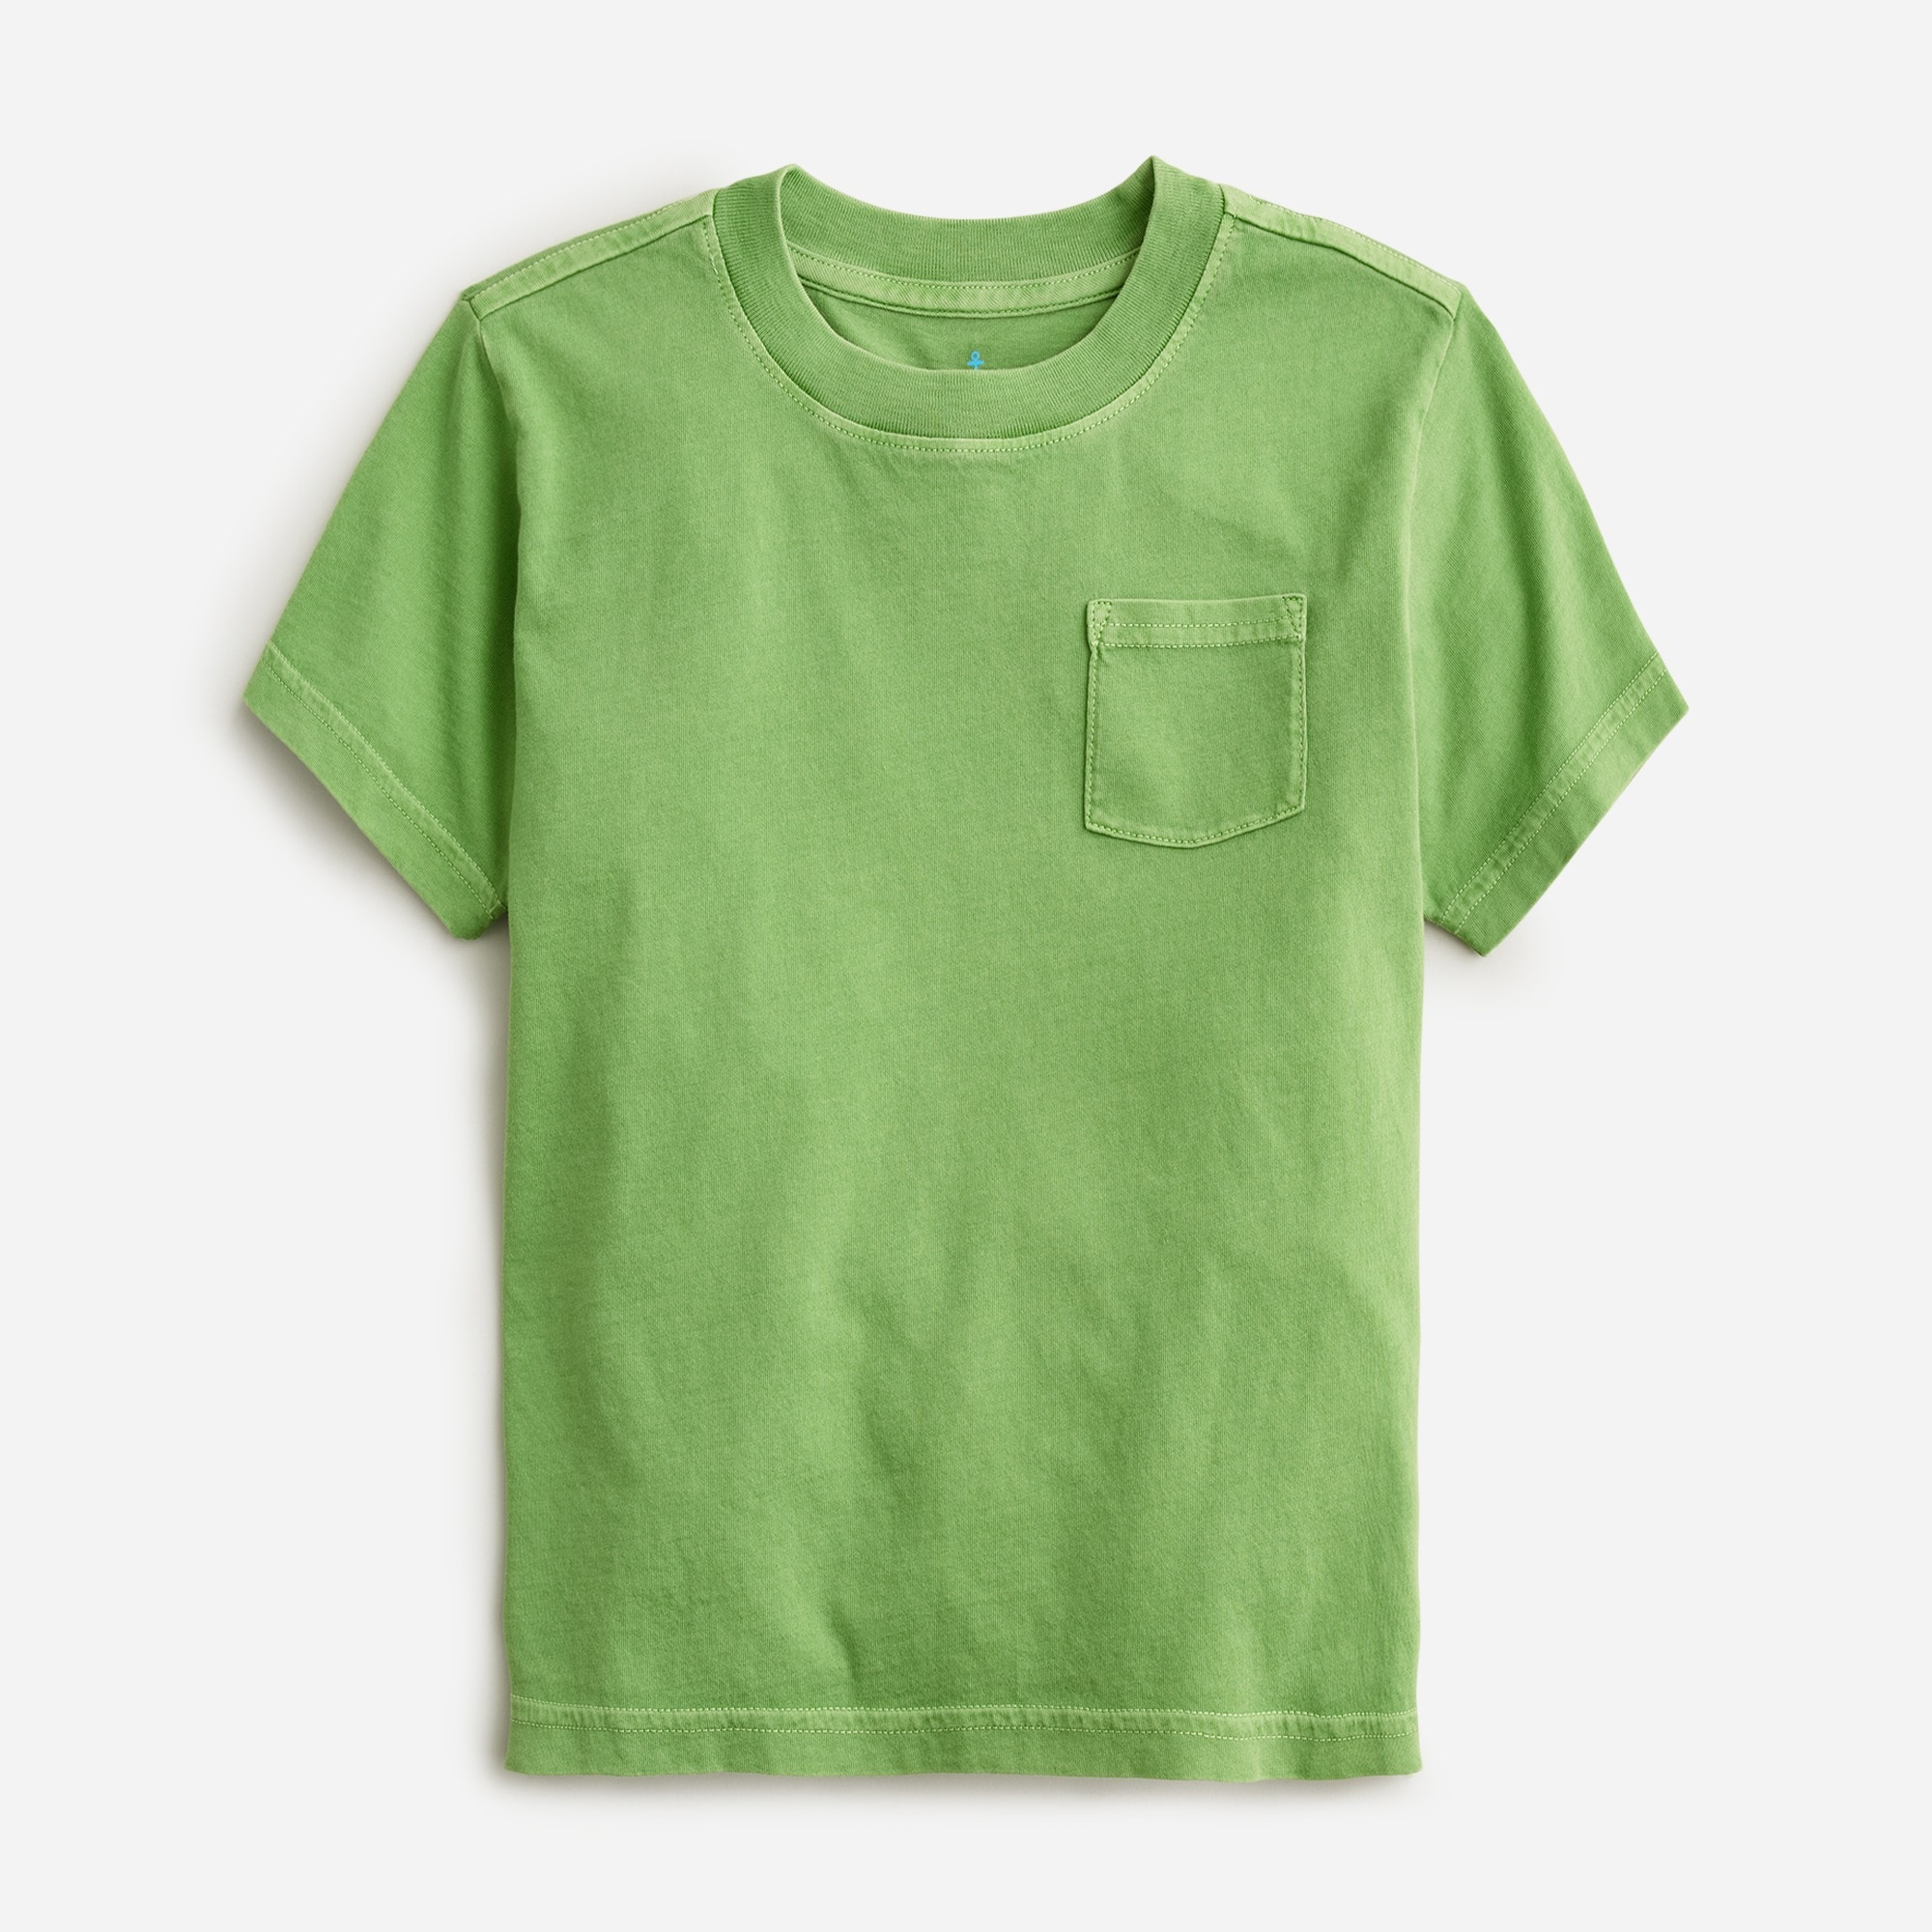 Jcrew Kids short-sleeve T-shirt in stripe